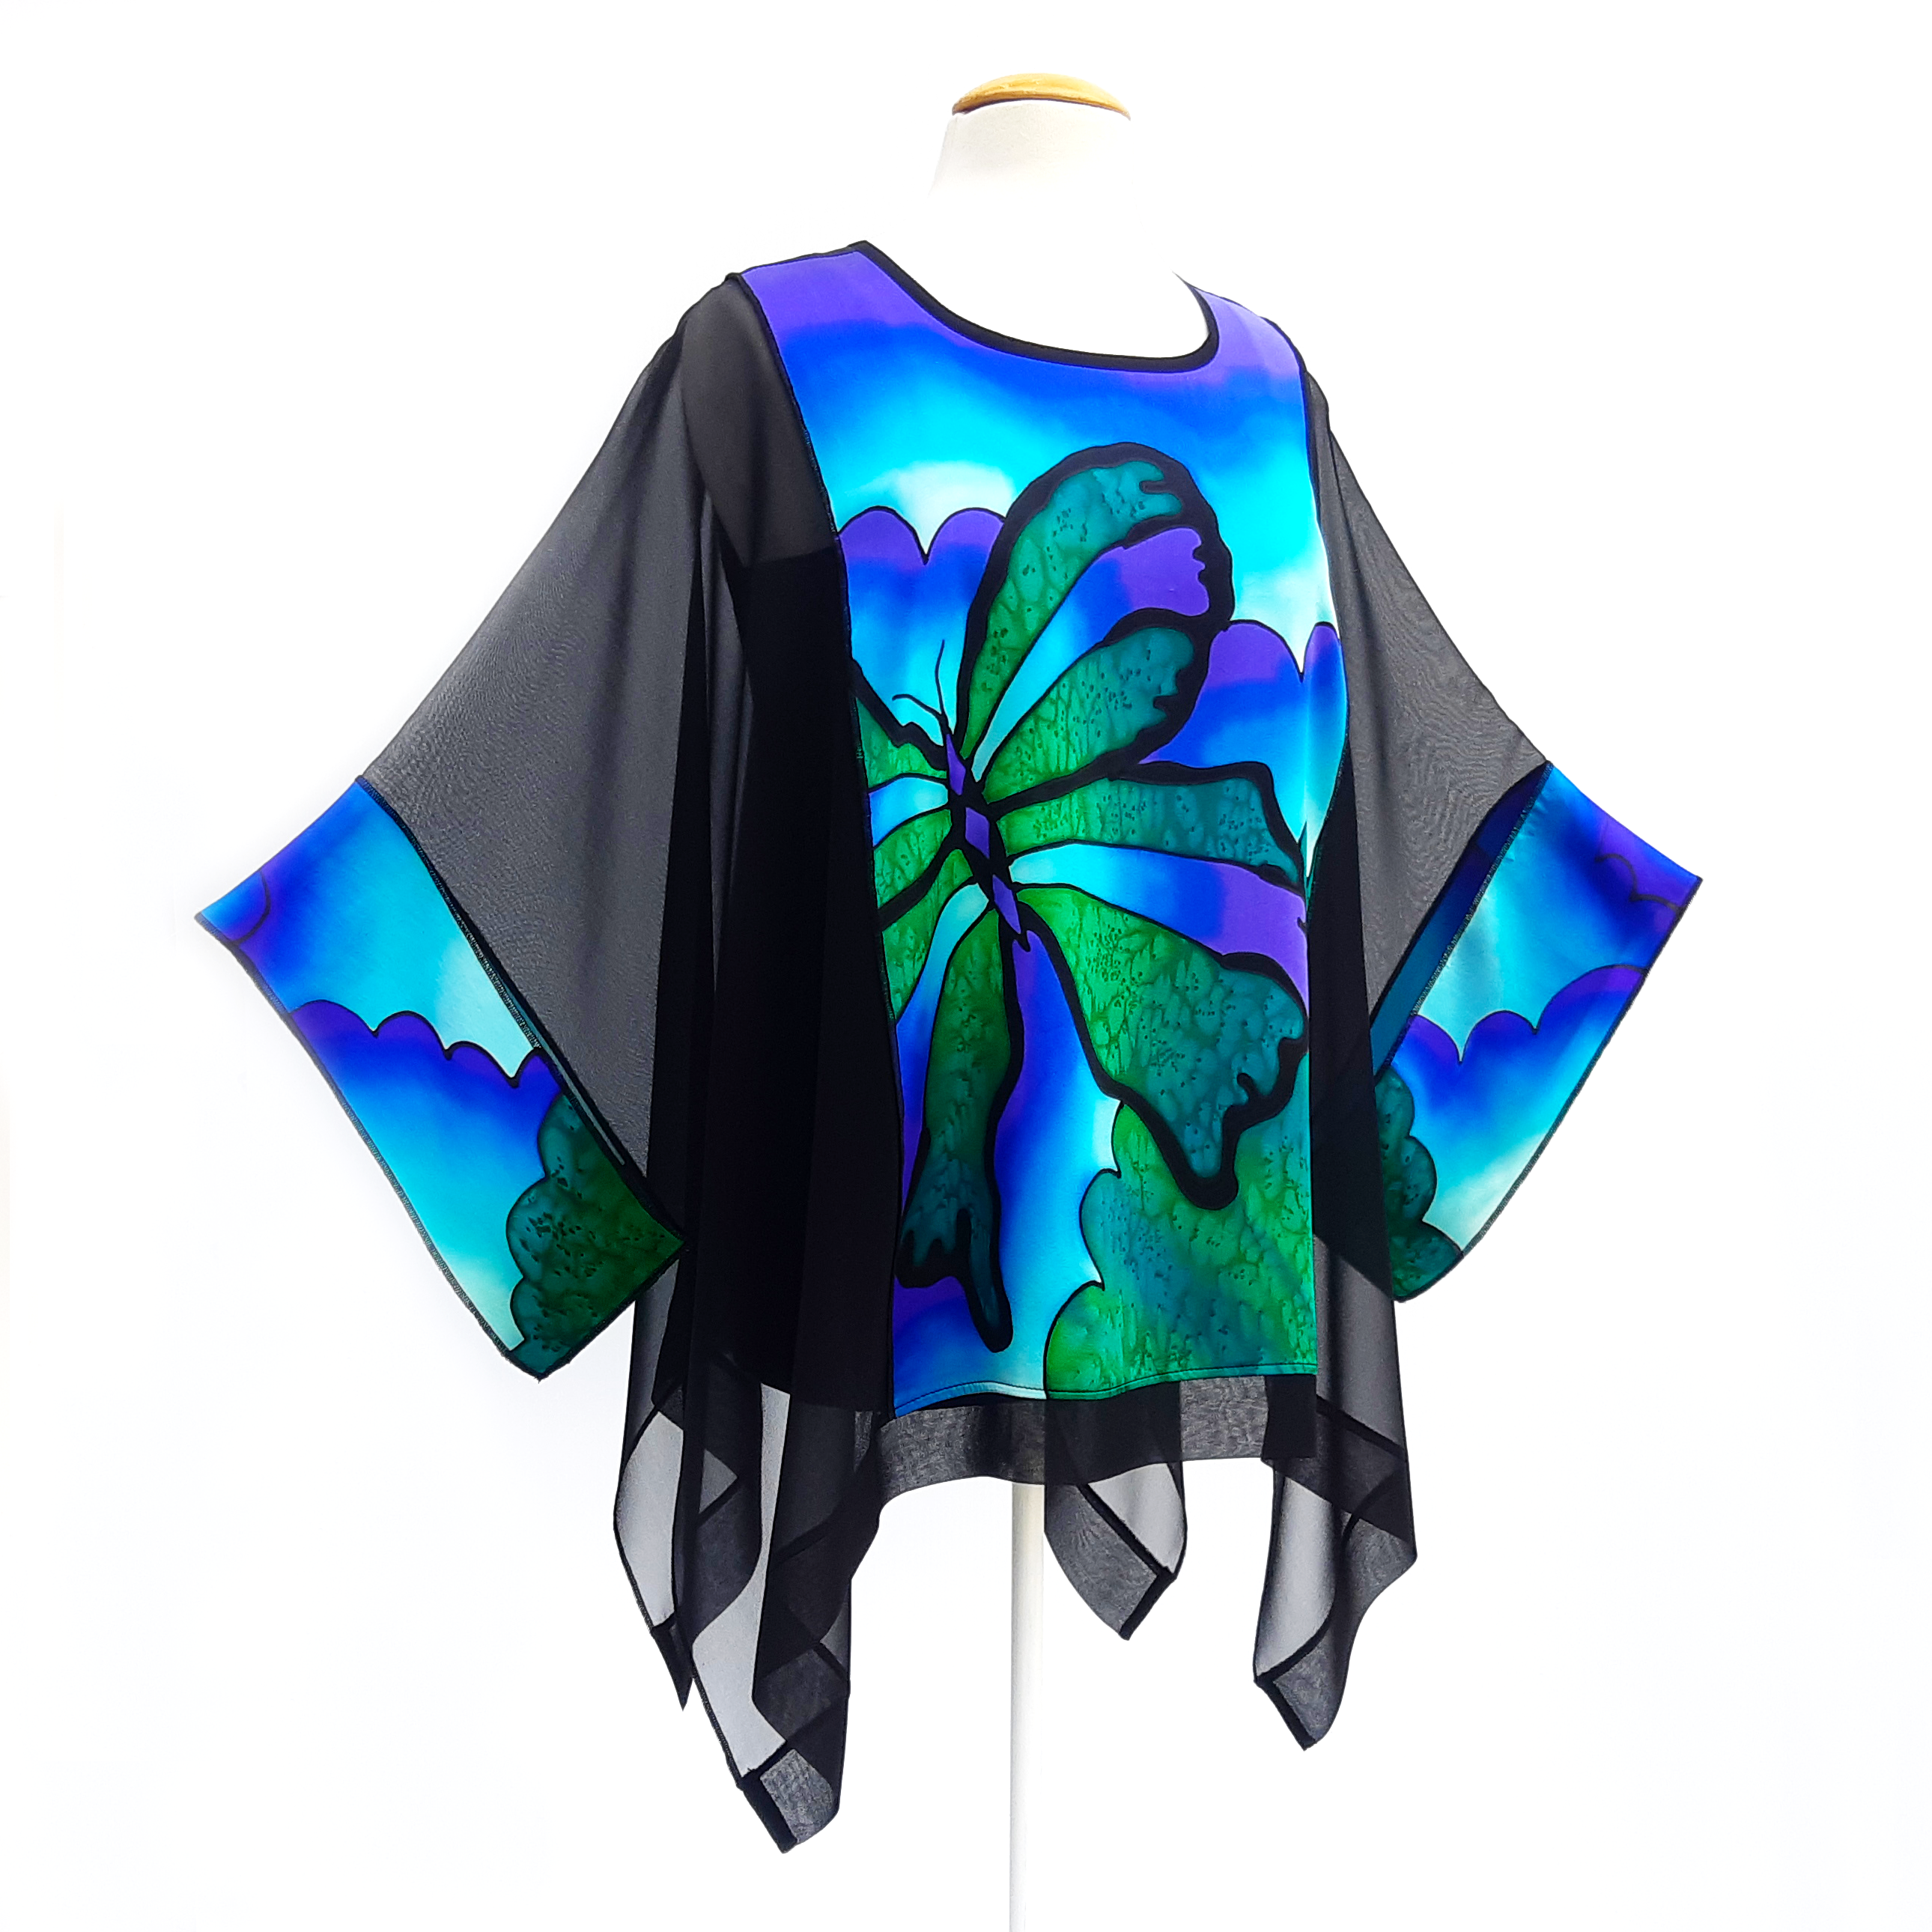 plus size long top for women painted silk green butterfly art made in Canada by Lynne Kiel